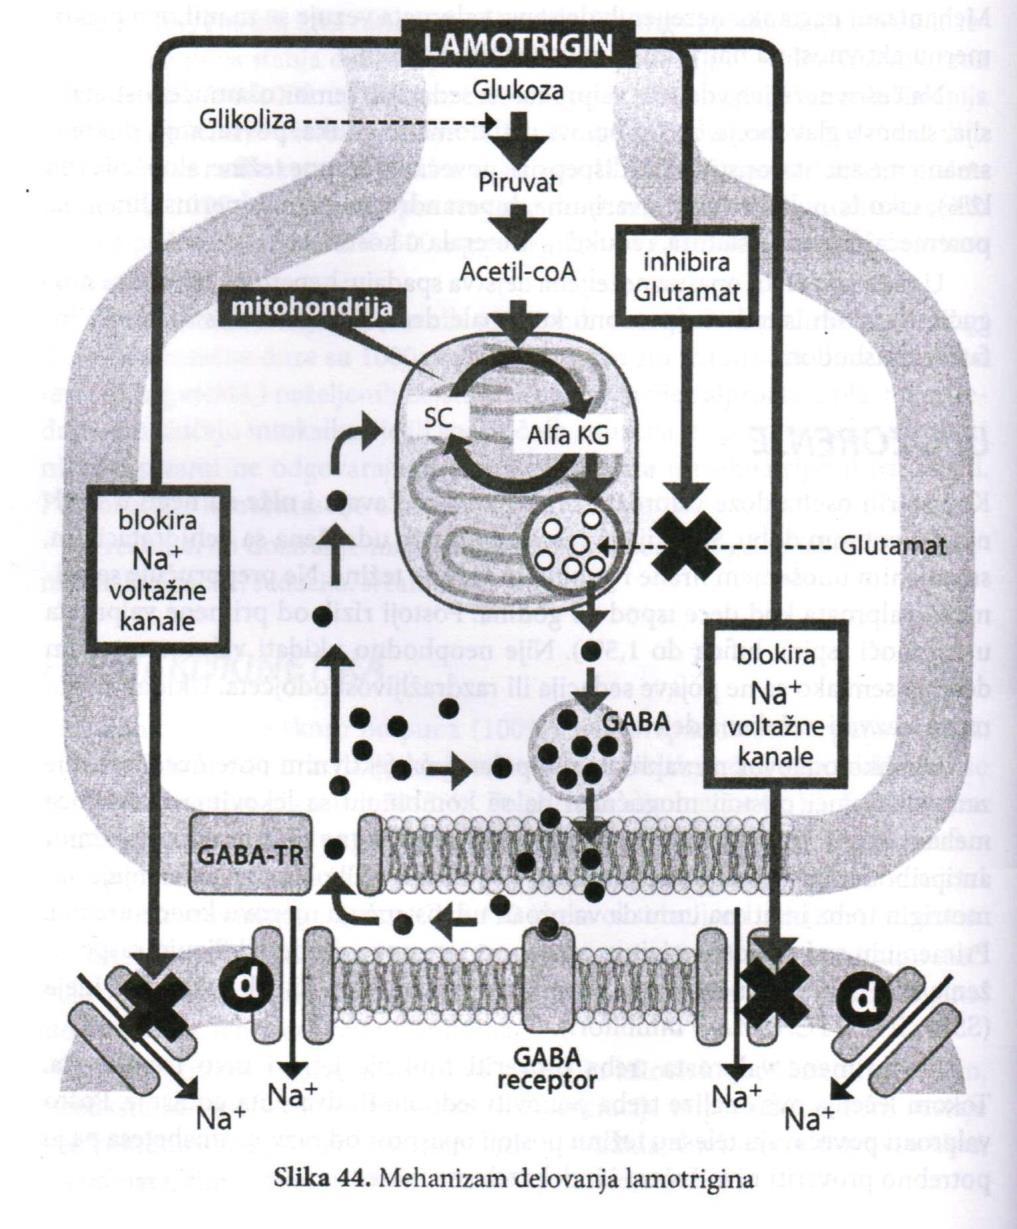 LAMOTRIGIN Mehanizam djelovanja : blokira natrijumske voltažne kanale, stupa u interakciju sa otvorenim natrijumskim voltažnim kanalima. Značajno dejstvo postiže inhibiranjem oslobađanja glutamata.